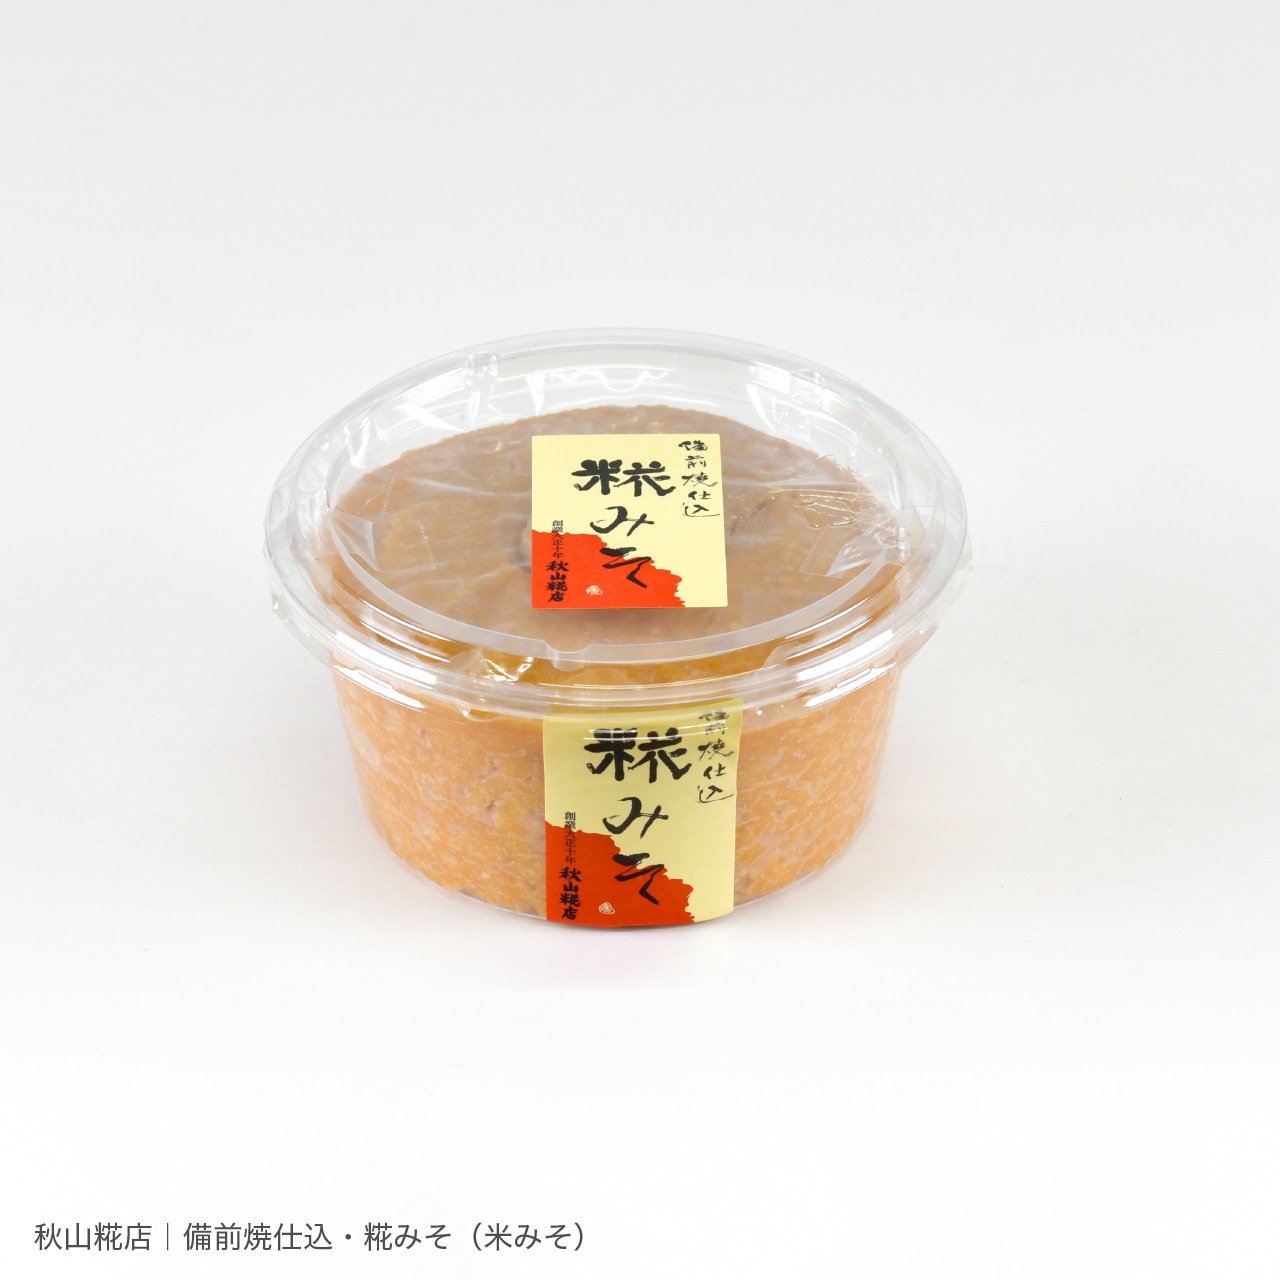 味噌食べくらべ・ 赤米商品セット